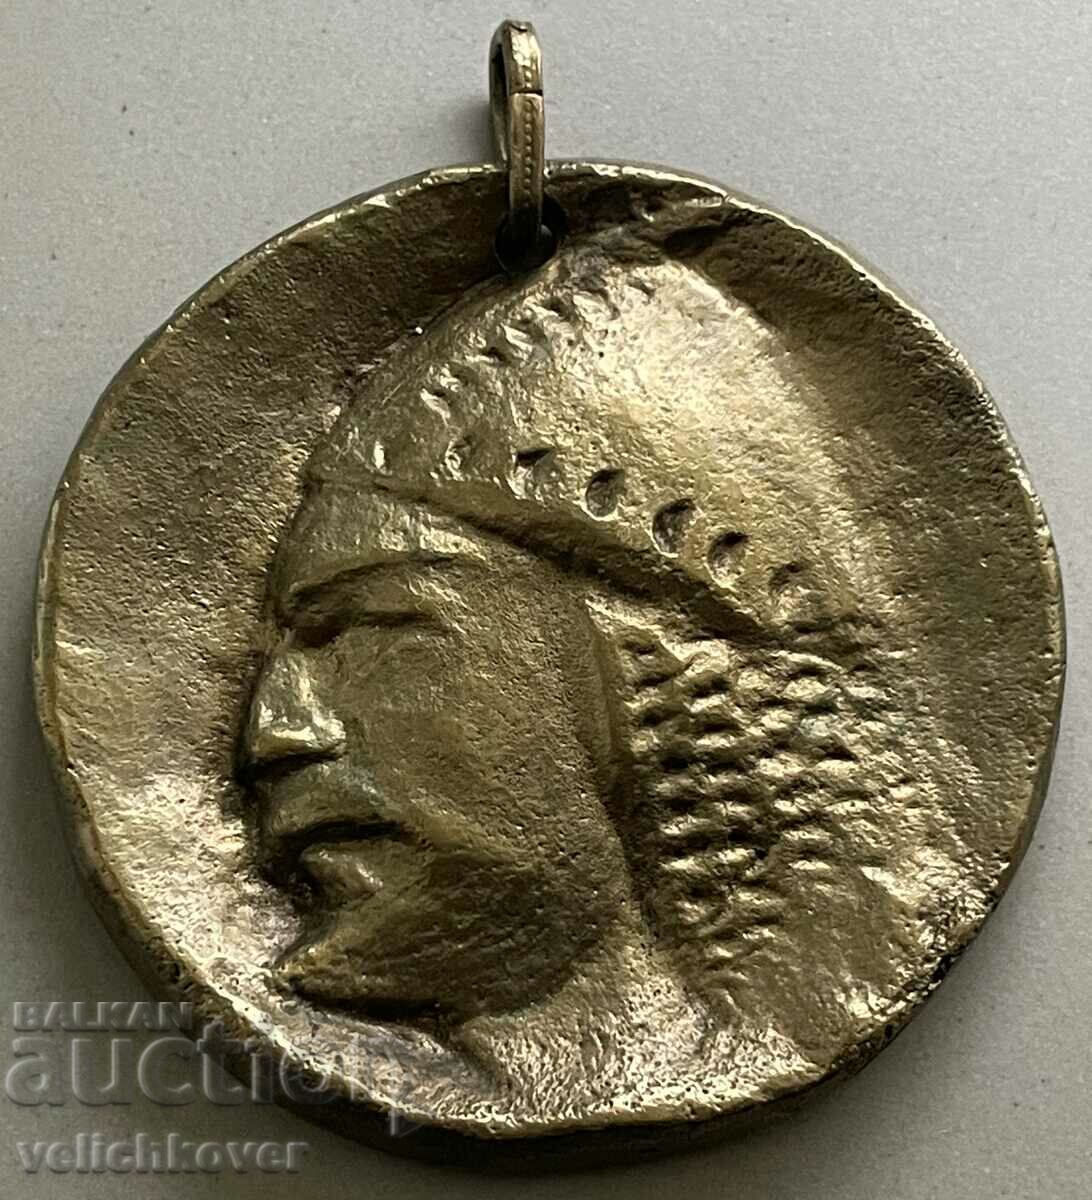 33452 Μετάλλιο Βουλγαρίας με έναν παλιό Βούλγαρο πολεμιστή